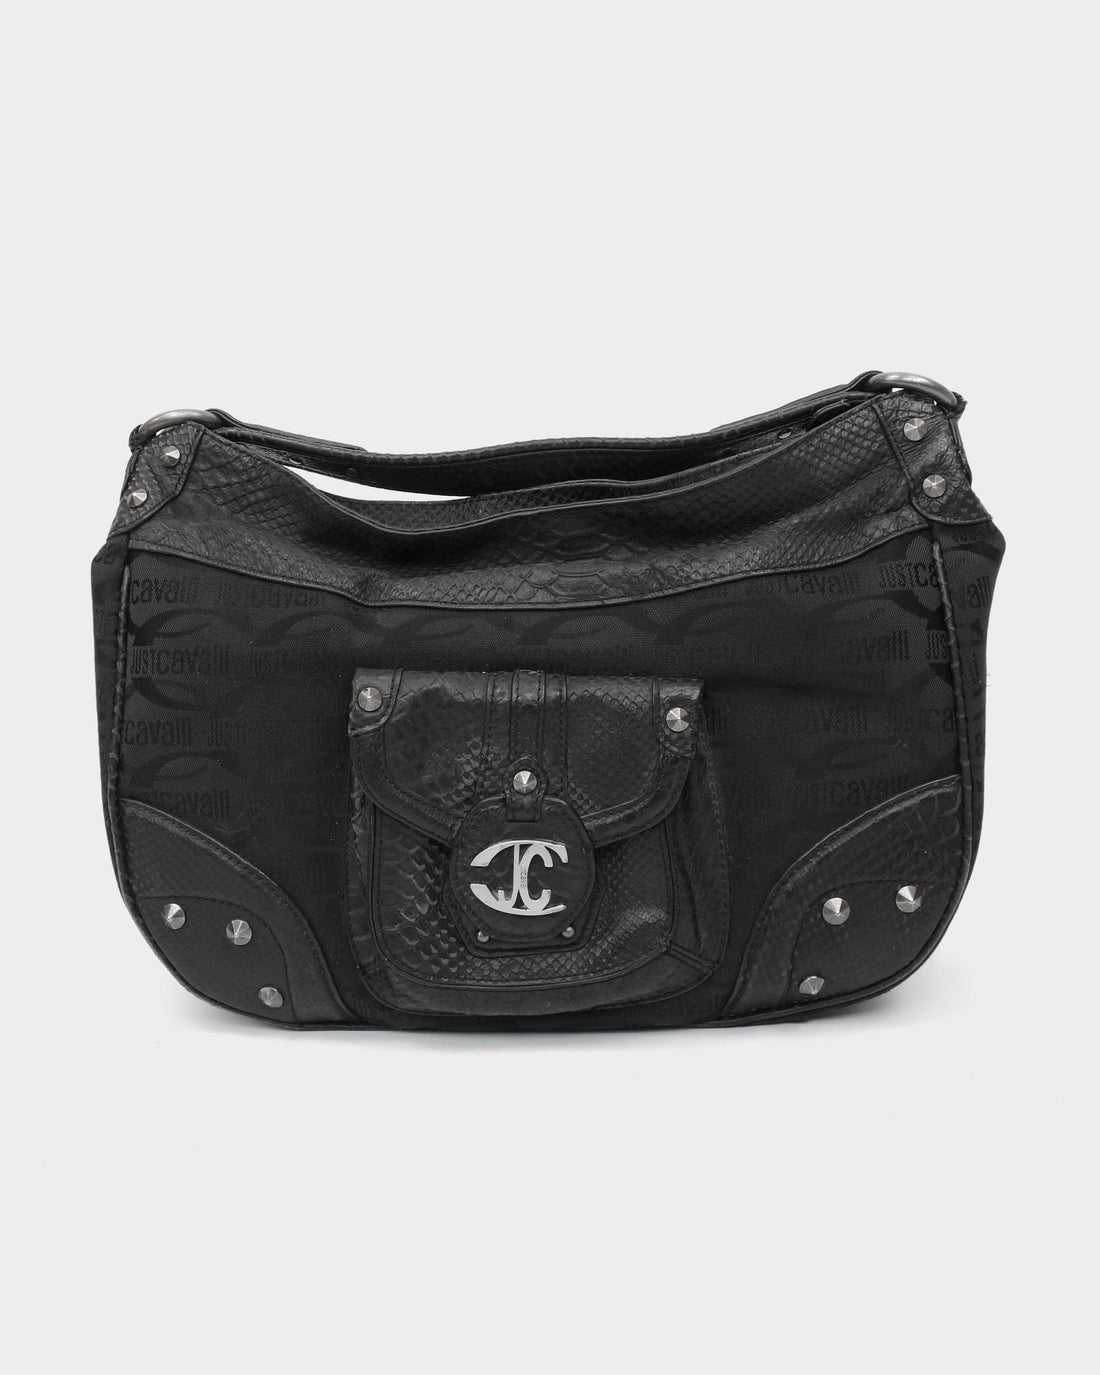 Just Cavalli Black Texture Leather Bag 2000's